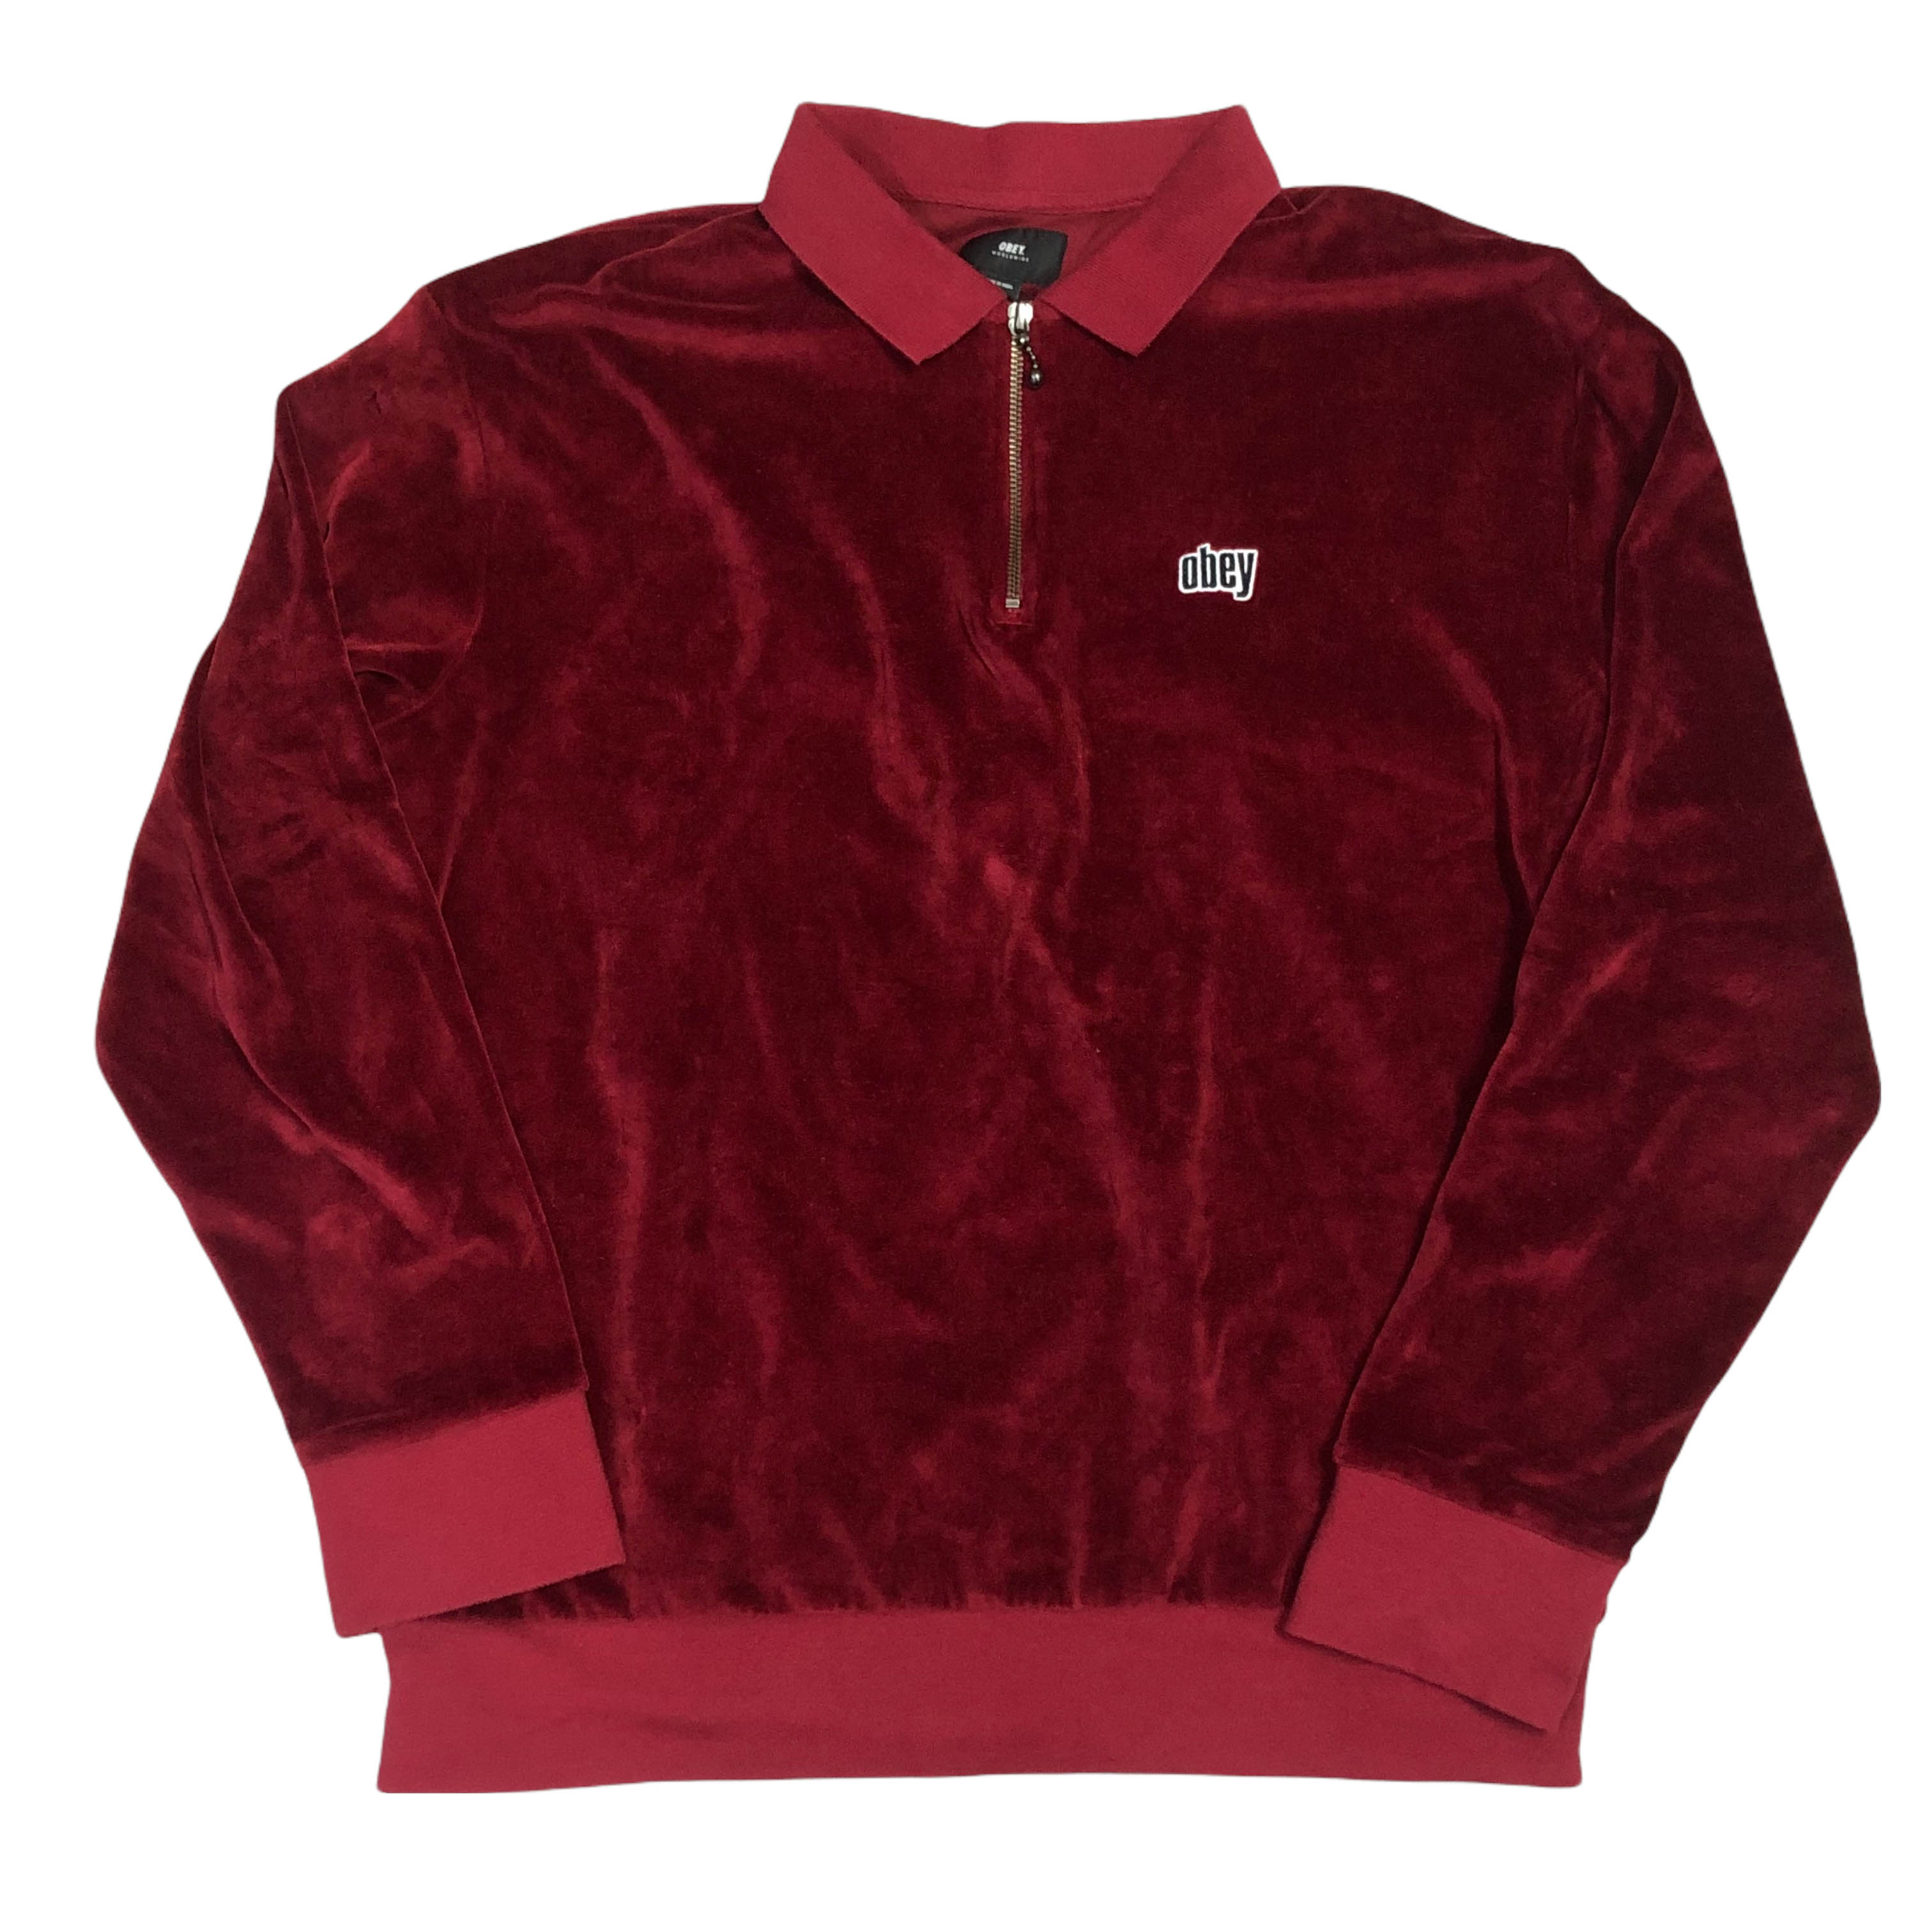 [Obey] Velvet Zip-up Sweatshirt - Size M